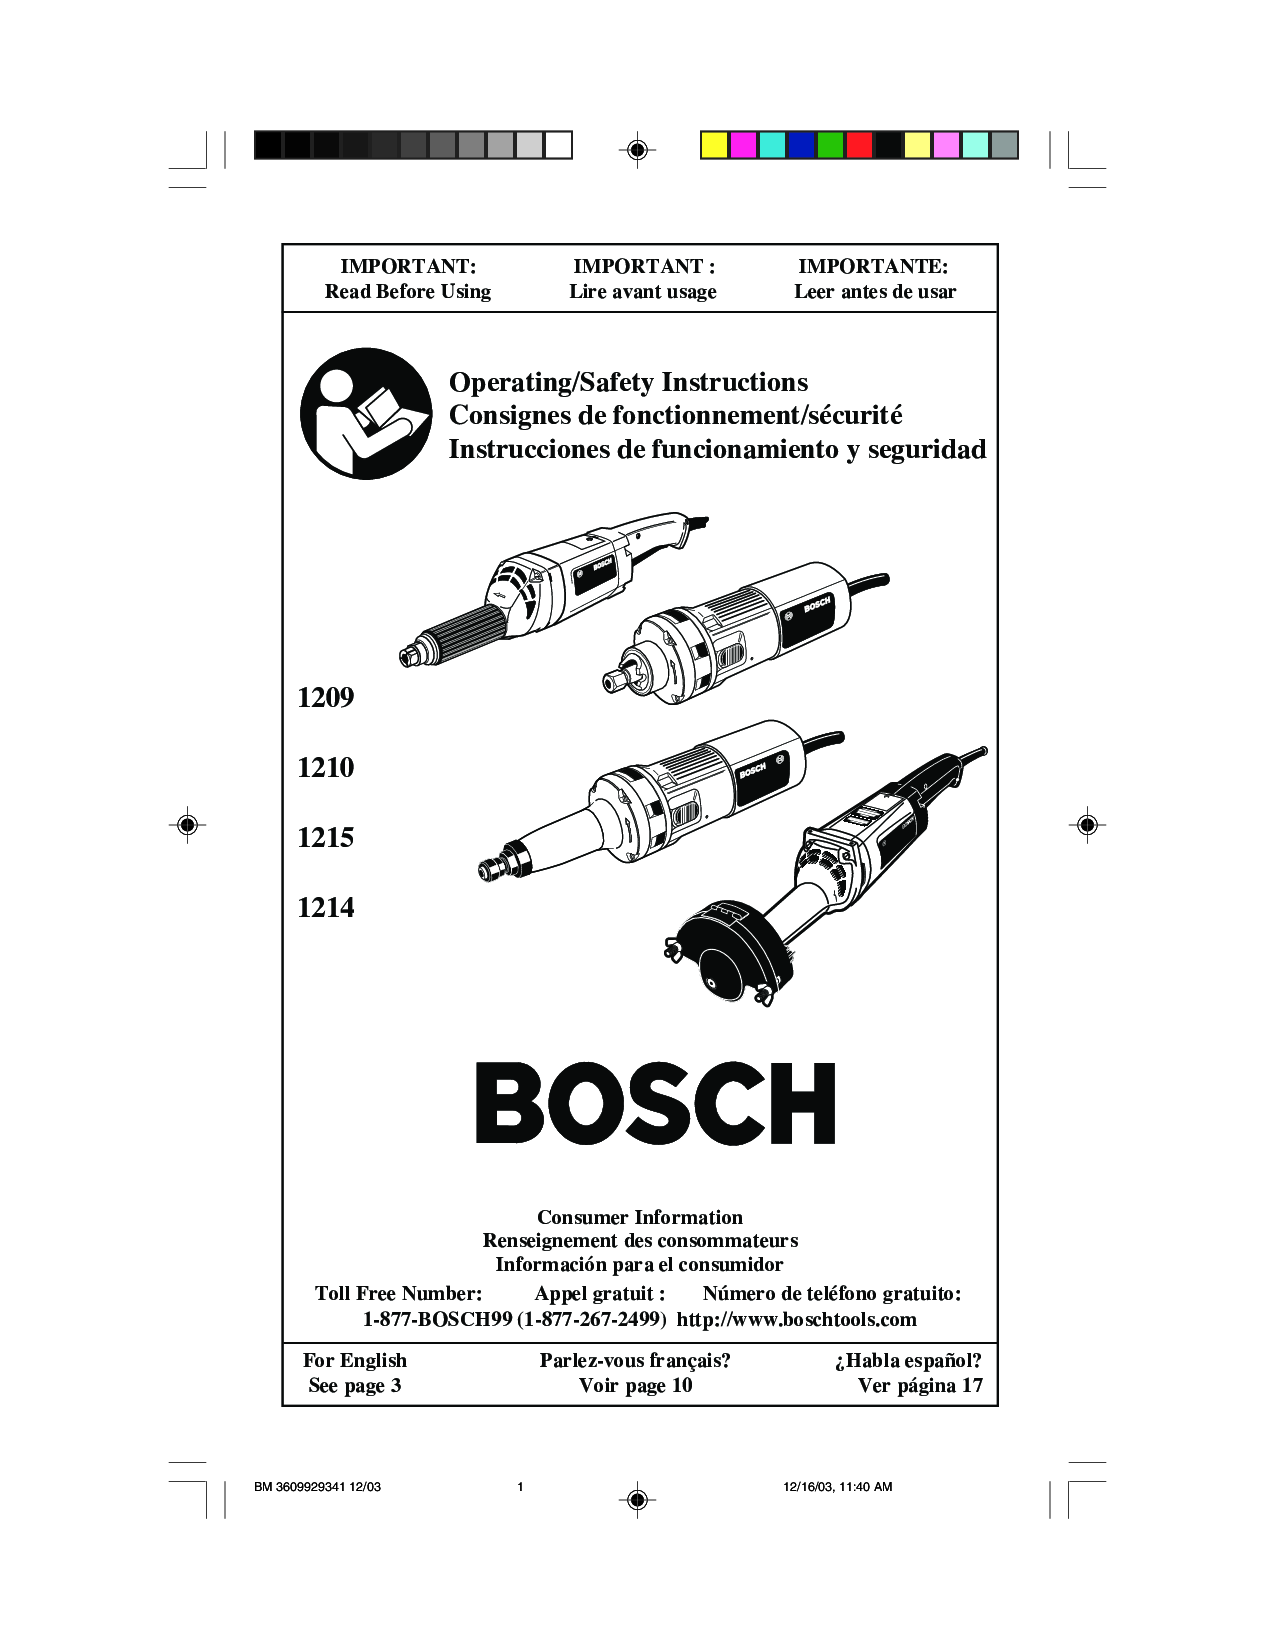 Bosch 1214 1209 1215 1210 User Manual